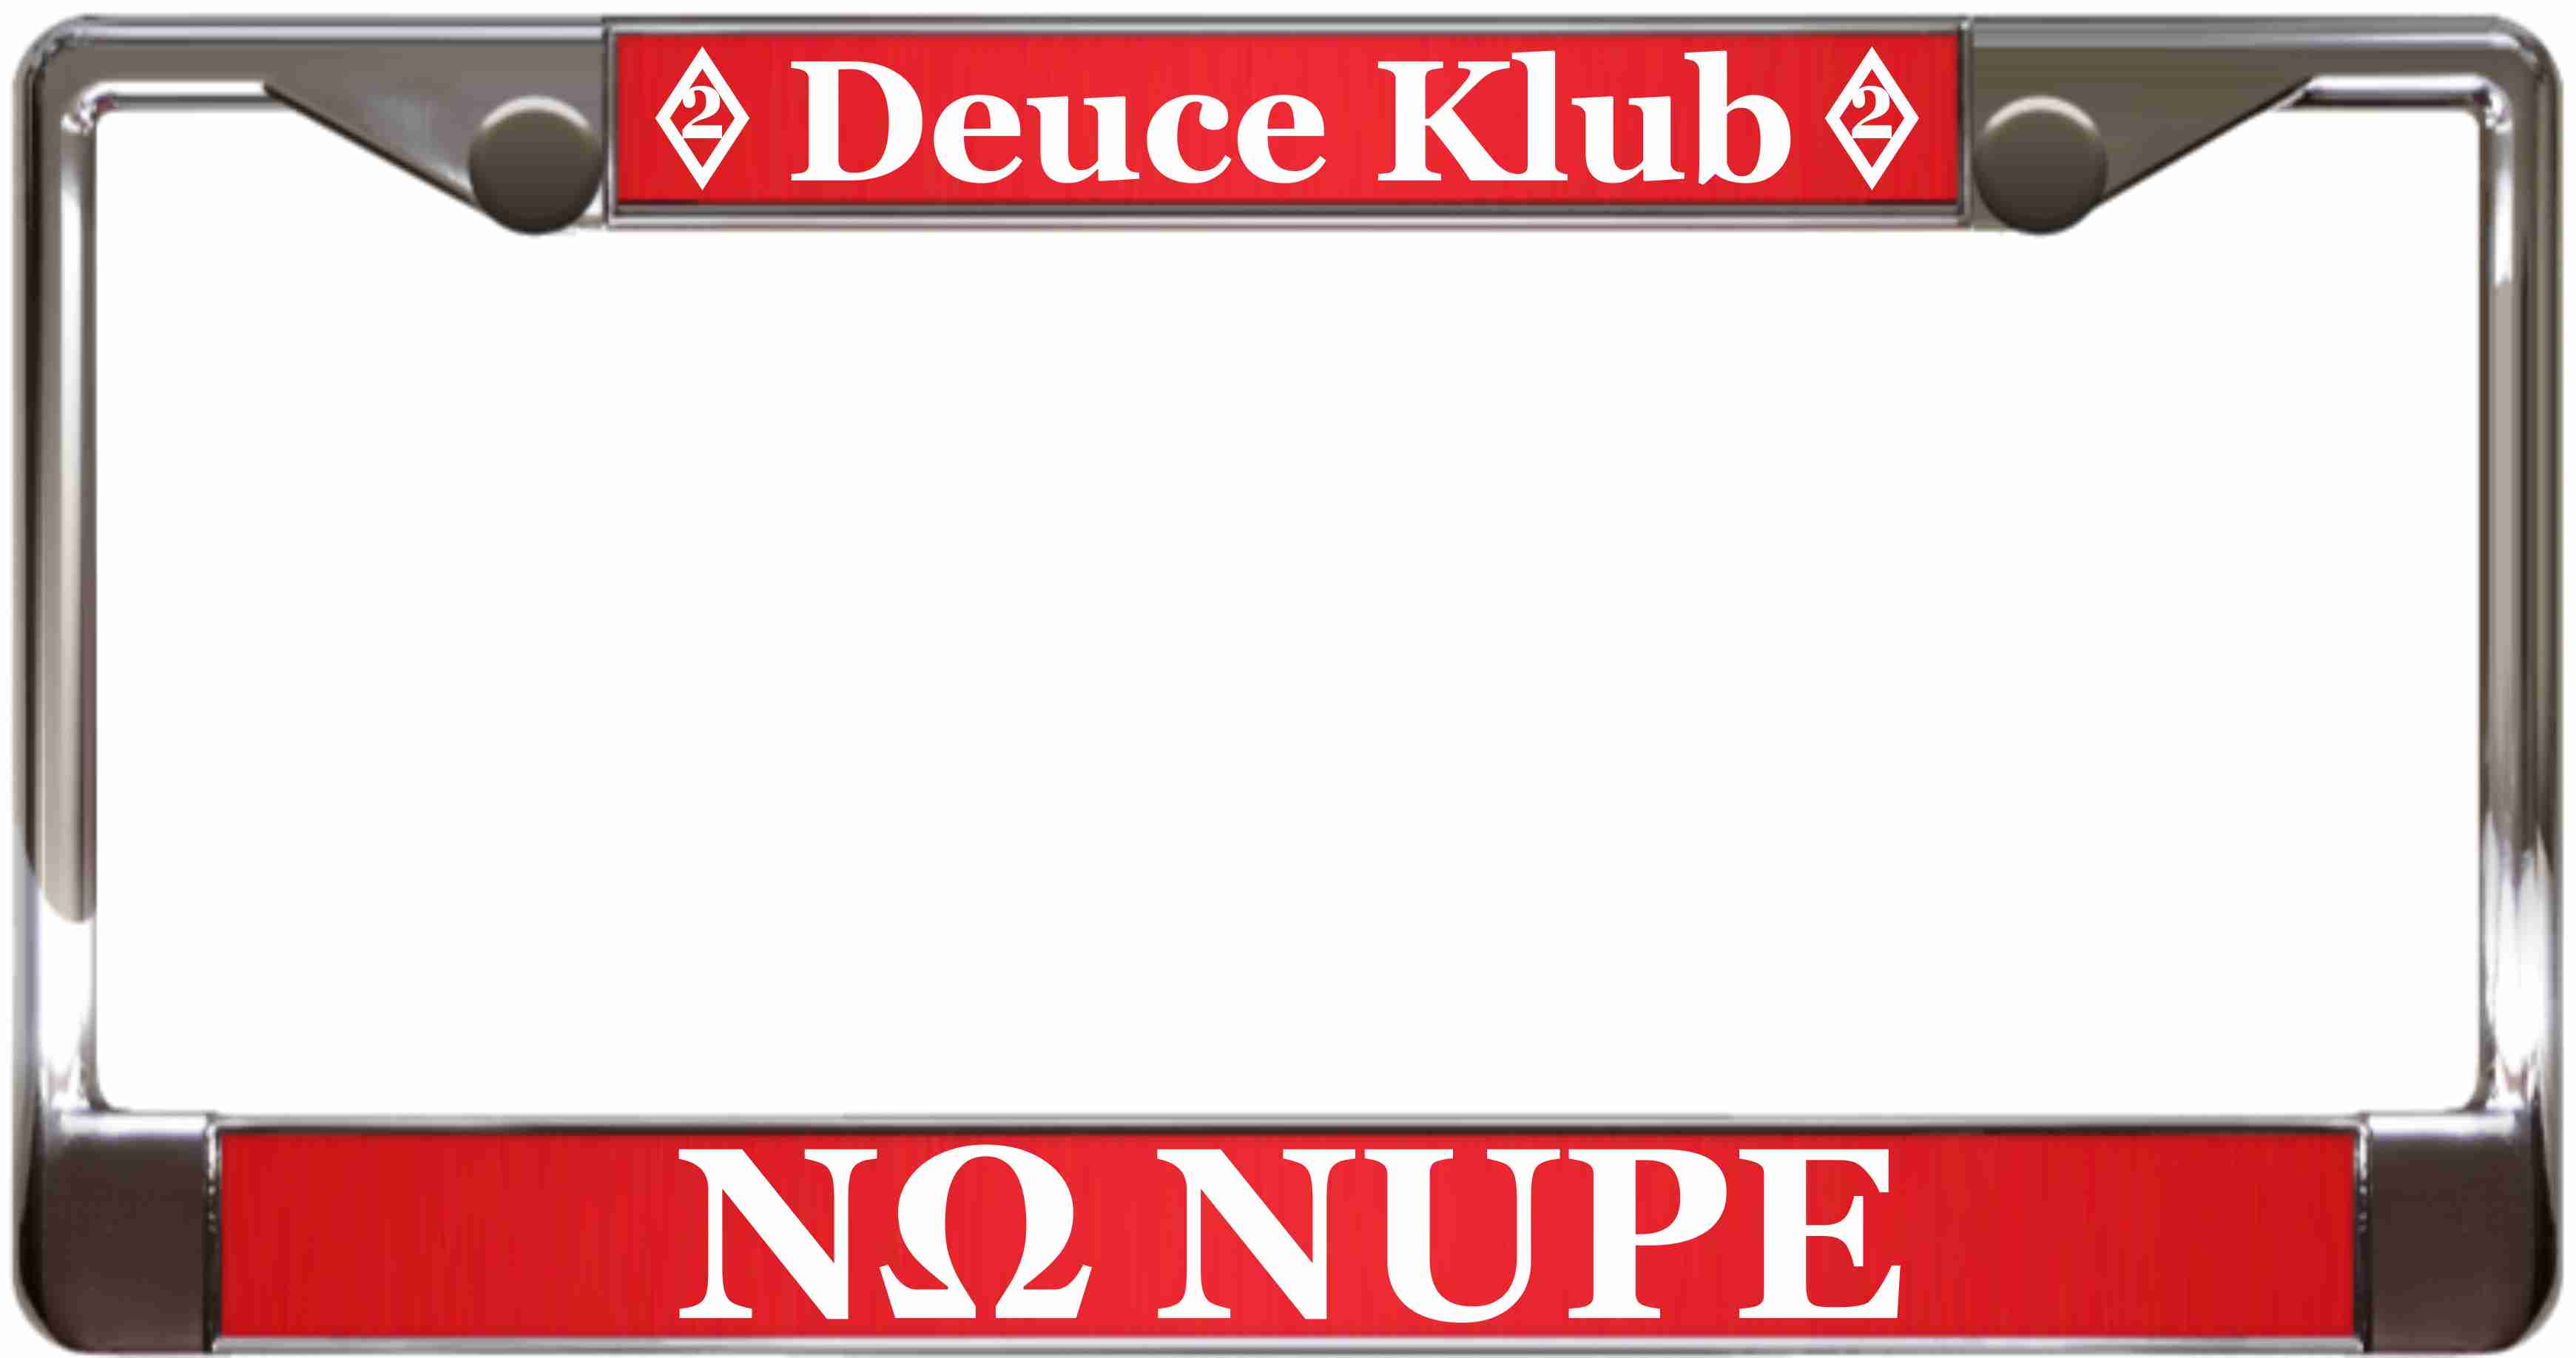 Deuce Klub - custom metal license plate frame